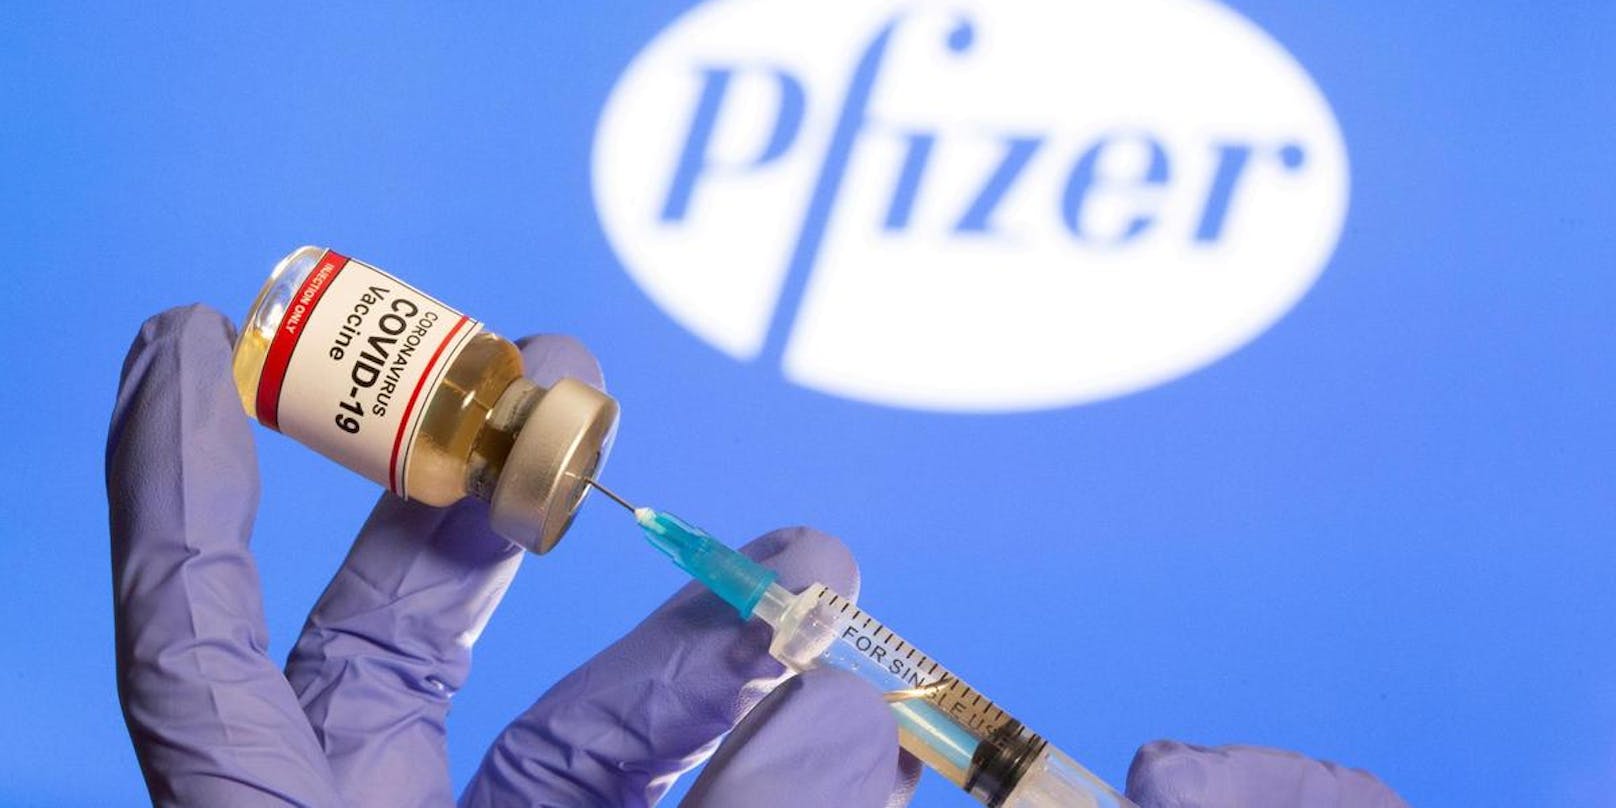 Nur die Hälfte der Impfdosen verfügbar: Der US-Pharmakonzern Pfizer hat sein Auslieferungsziel für die Covid-Impfung halbiert.